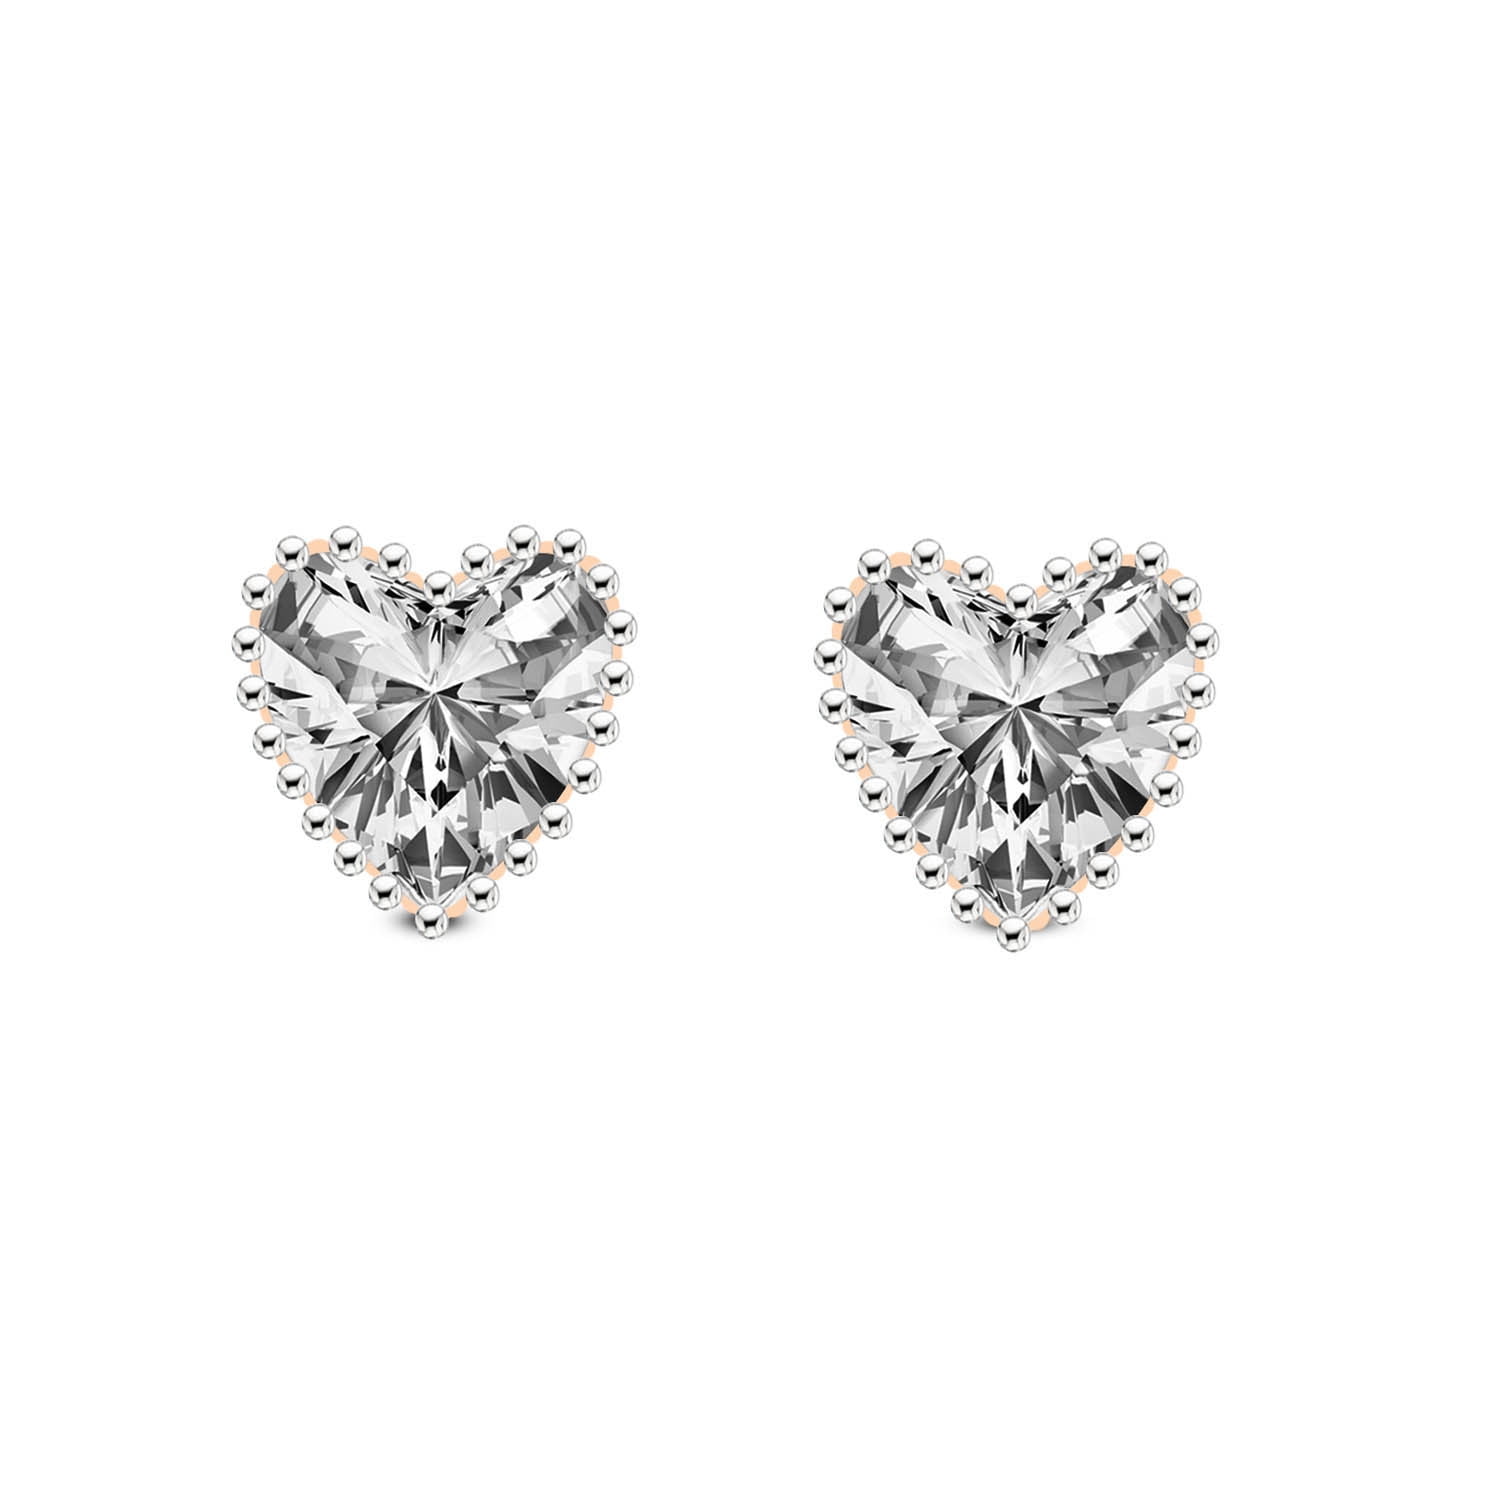 Certified (VS1-VS2) Diamond Earrings